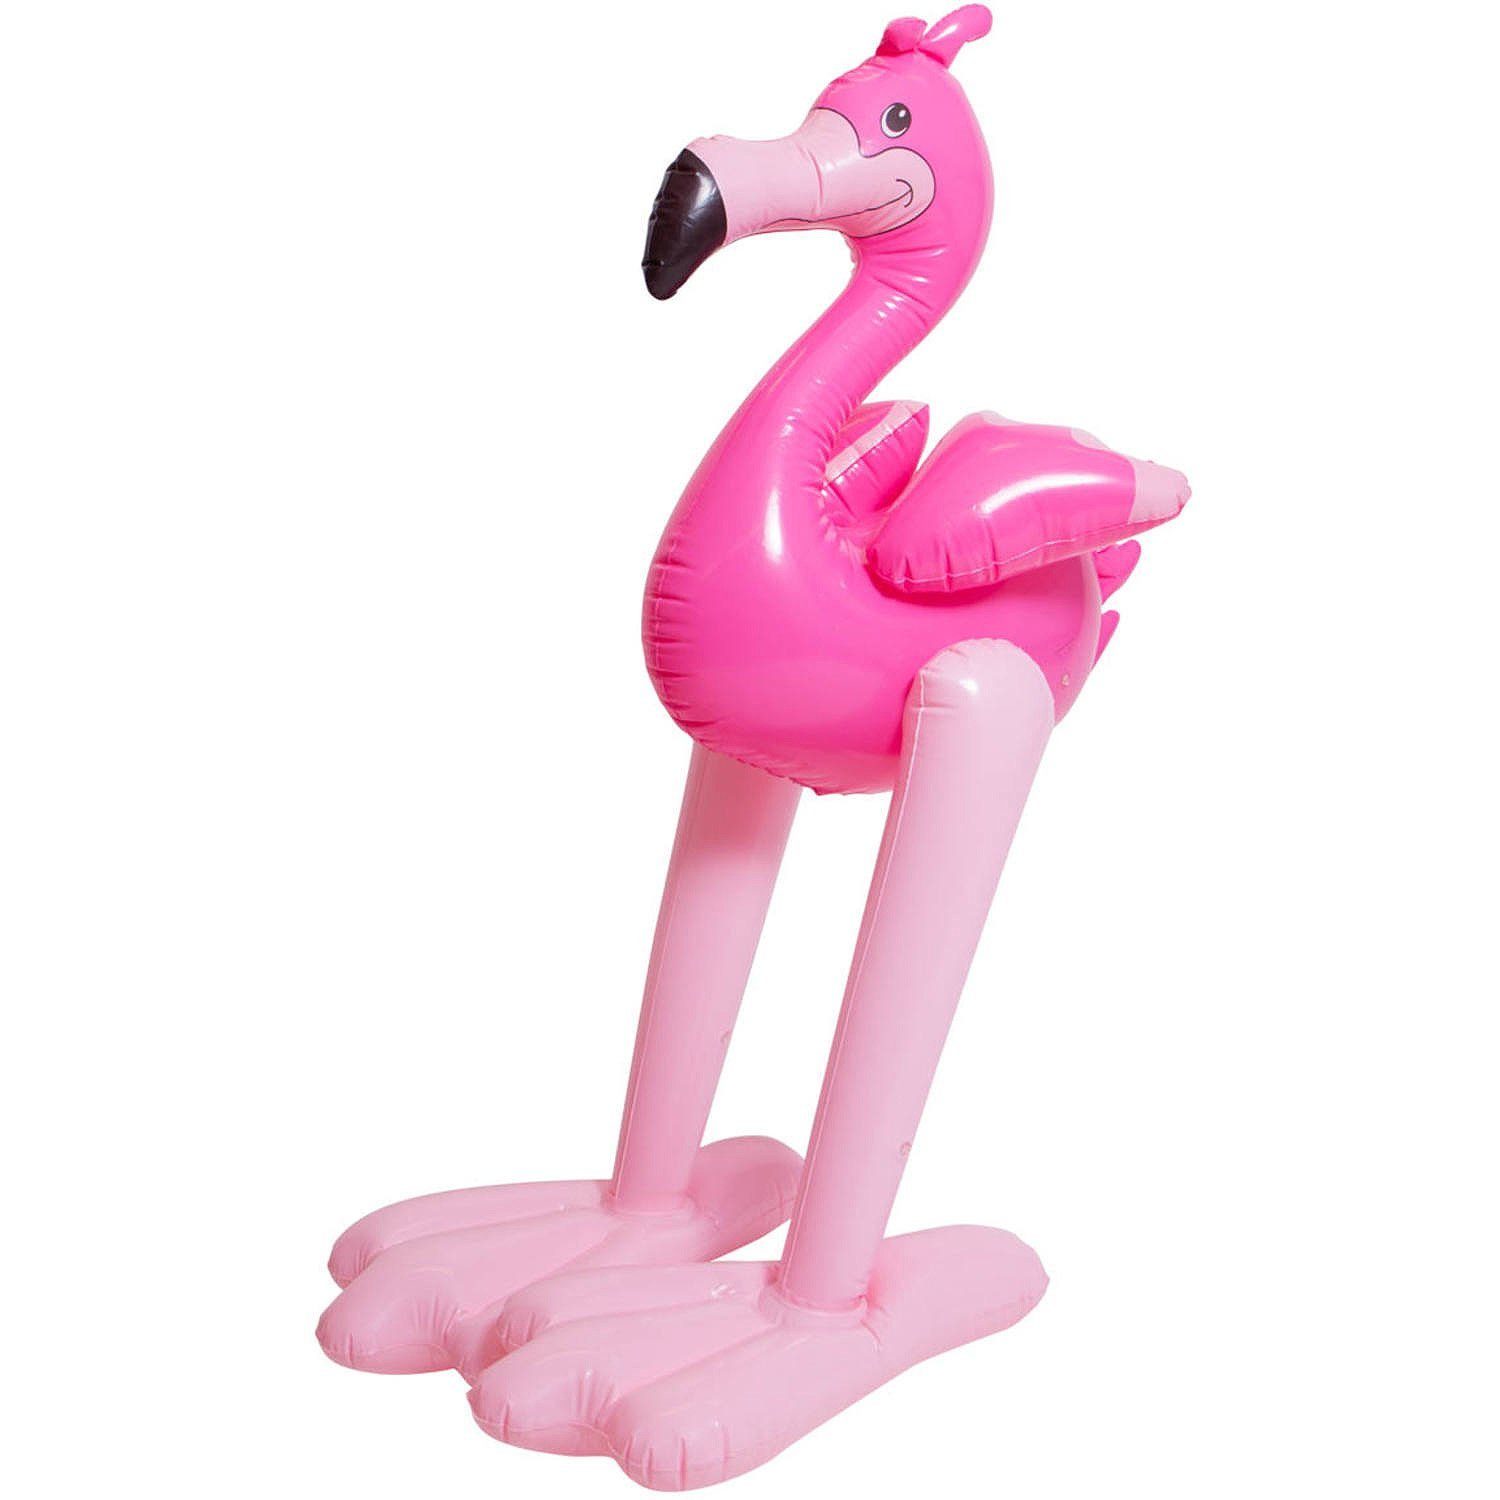 Folat Dekofigur Aufblasbarer Flamingo, Partydeko zum Aufpusten für eine tierische Mottoparty, Geburtstag ode